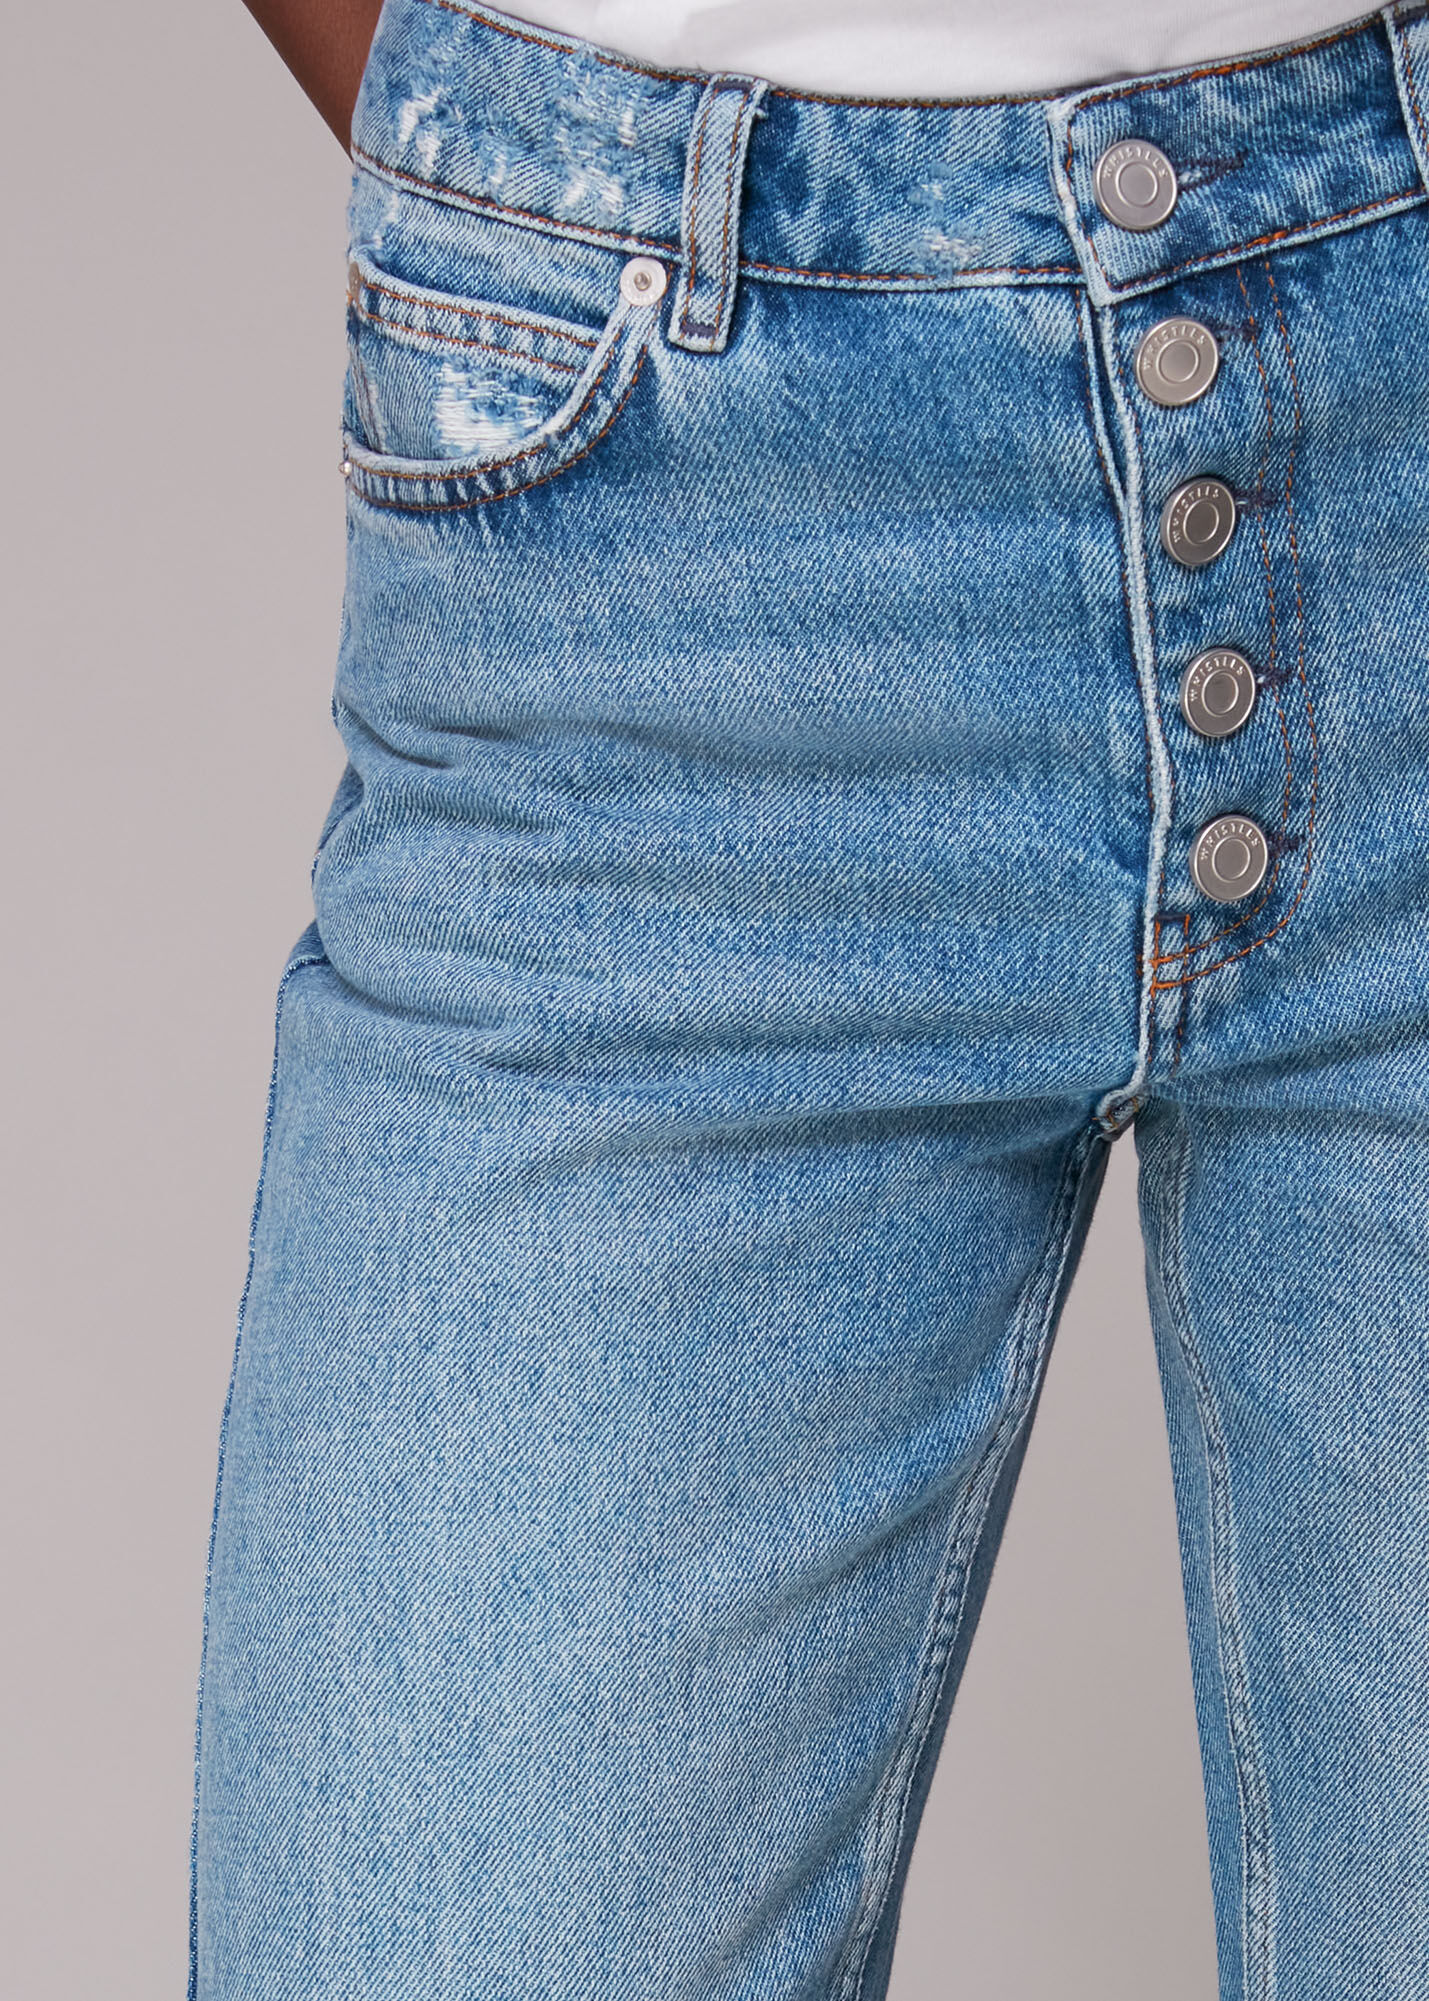 topshop low rise jeans